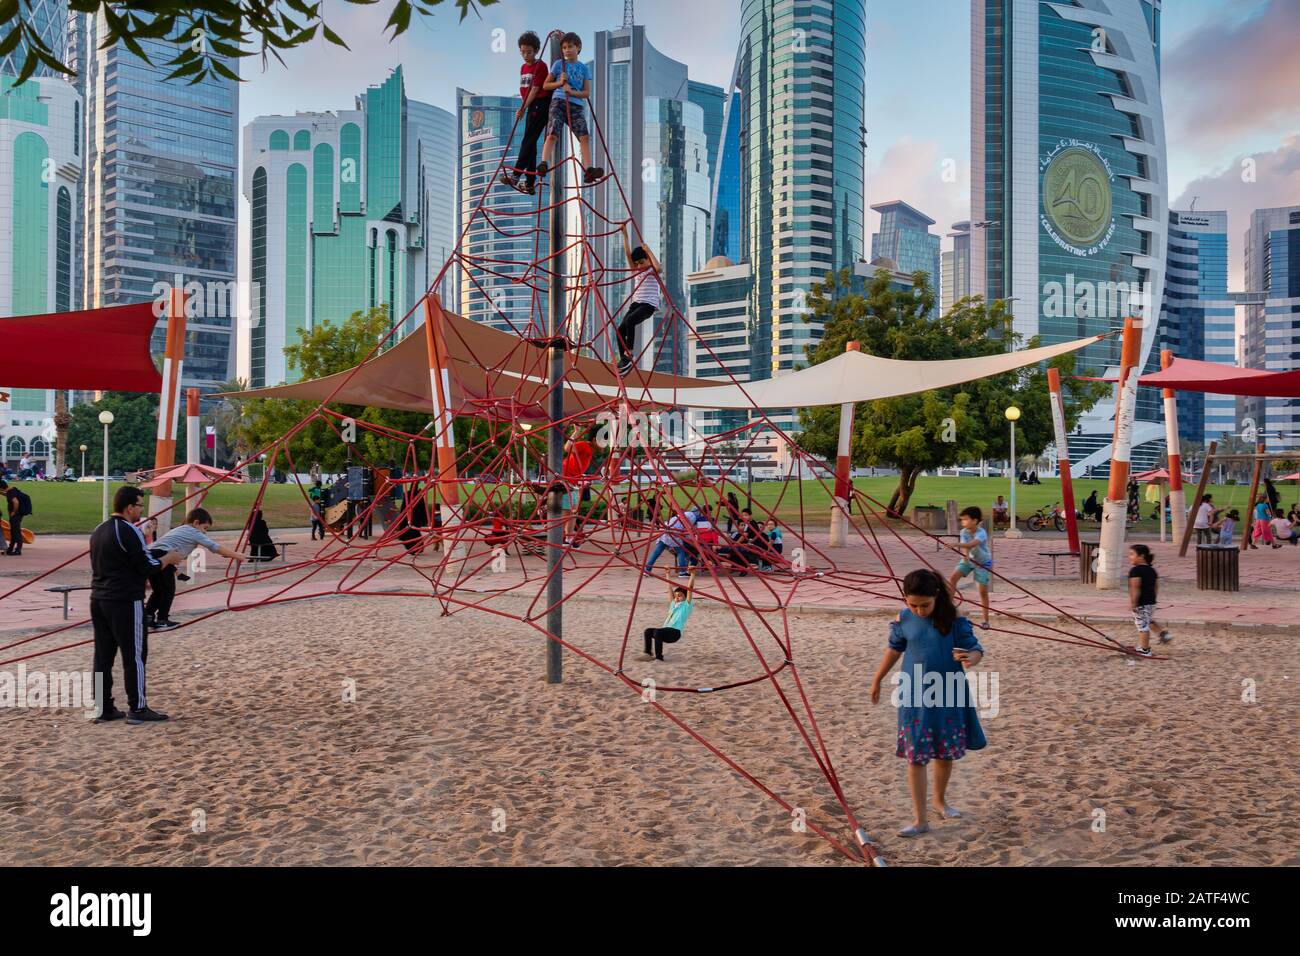 Sheraton Park in Doha Katar Tageslichtblick mit Kindern spielen Im Kinderspielplatz und Skyline mit Wolken am Himmel Im Hintergrund Stockfoto